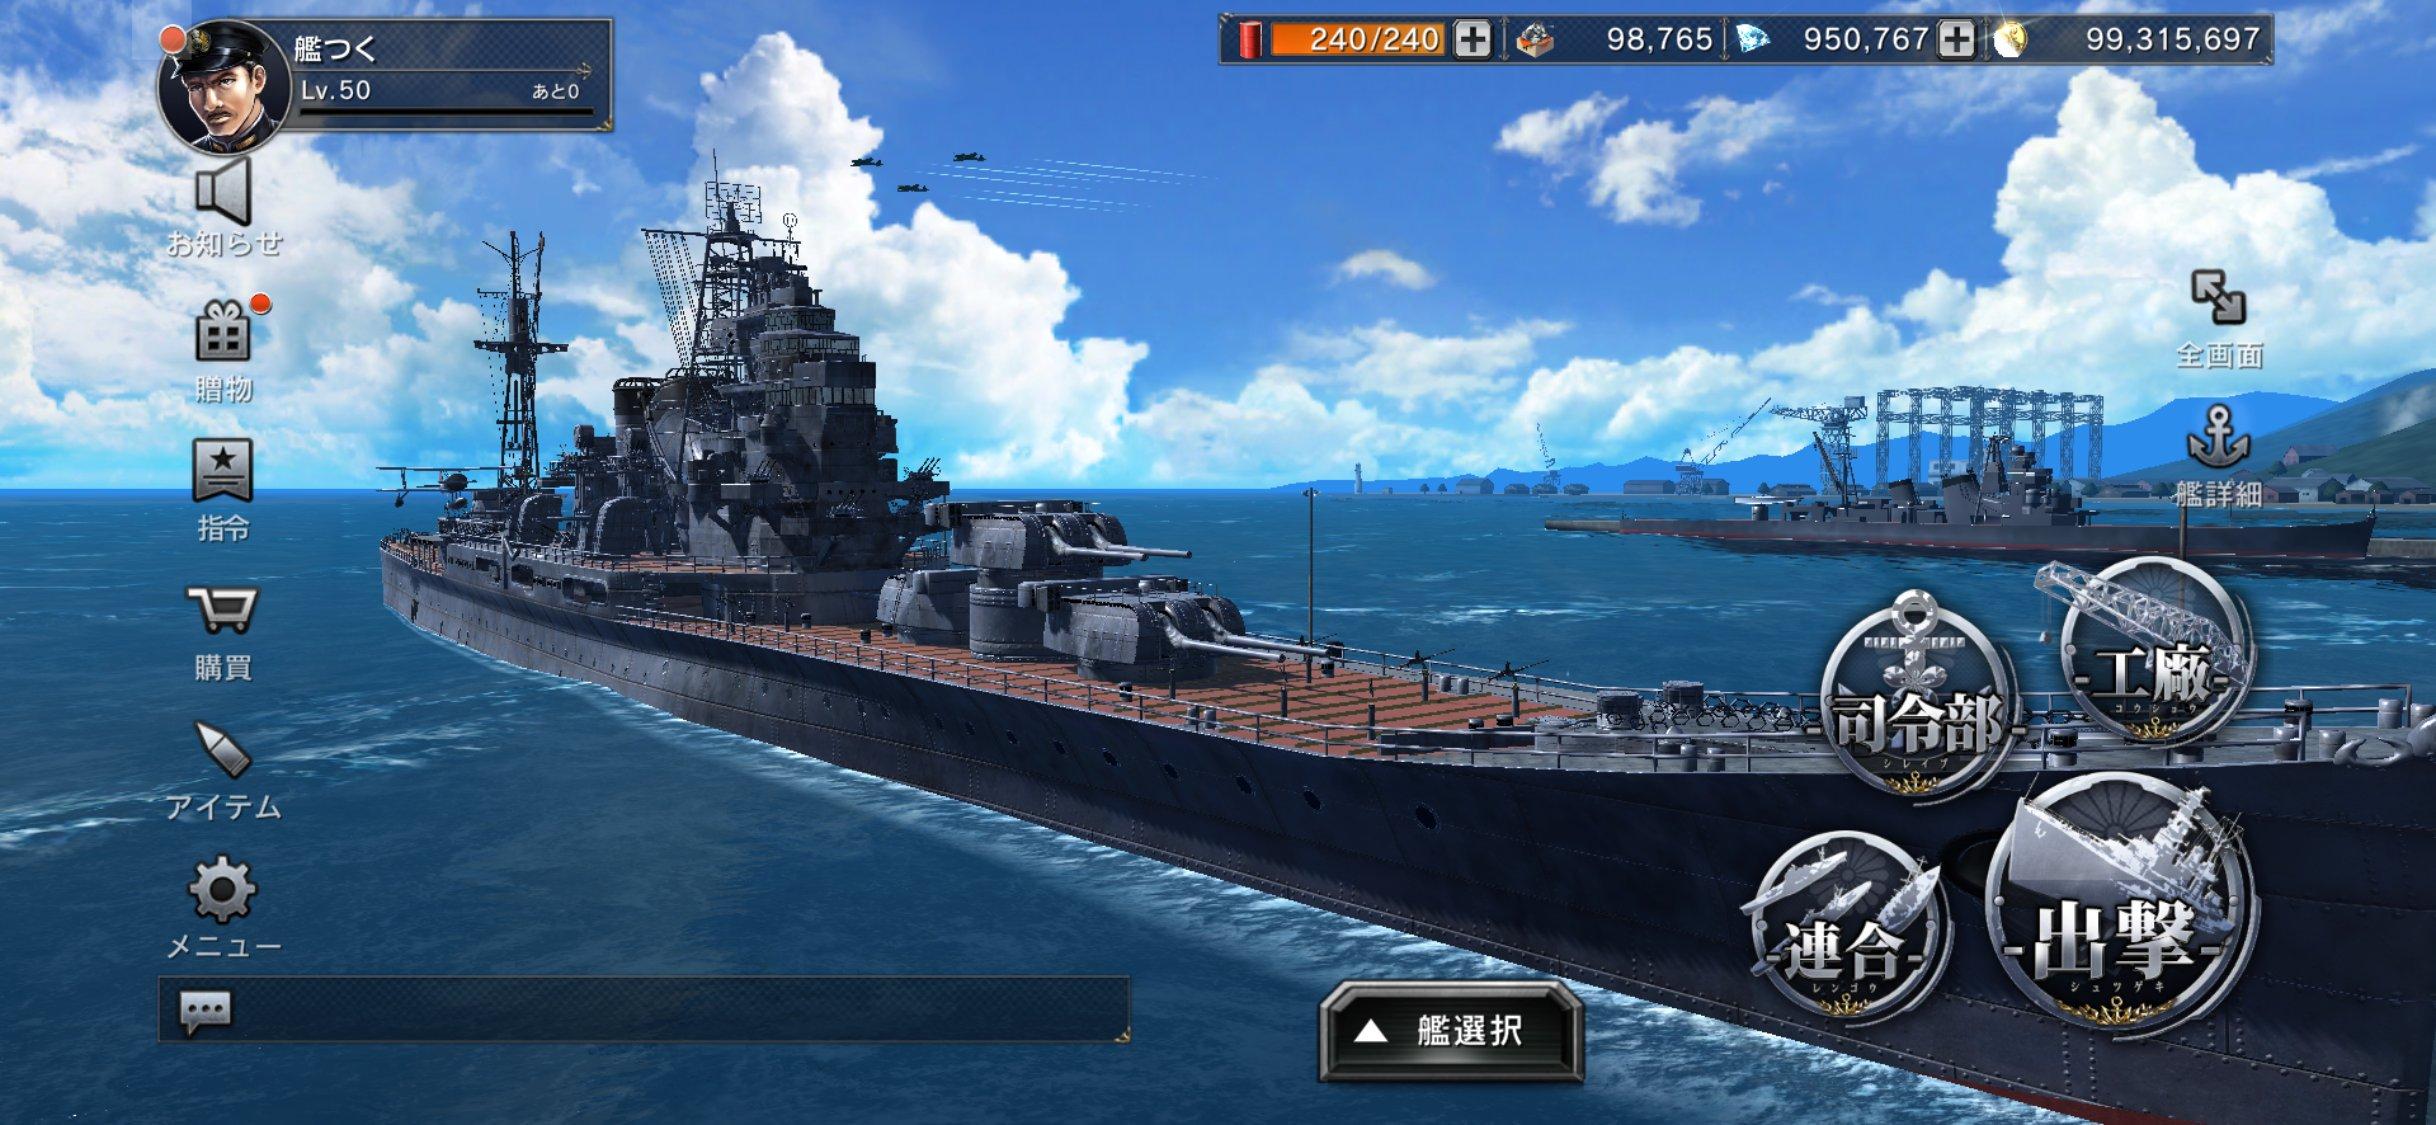 迫真模擬海戰手遊 艦建造warship Craft 夏季登場 香港手機遊戲網gameapps Hk